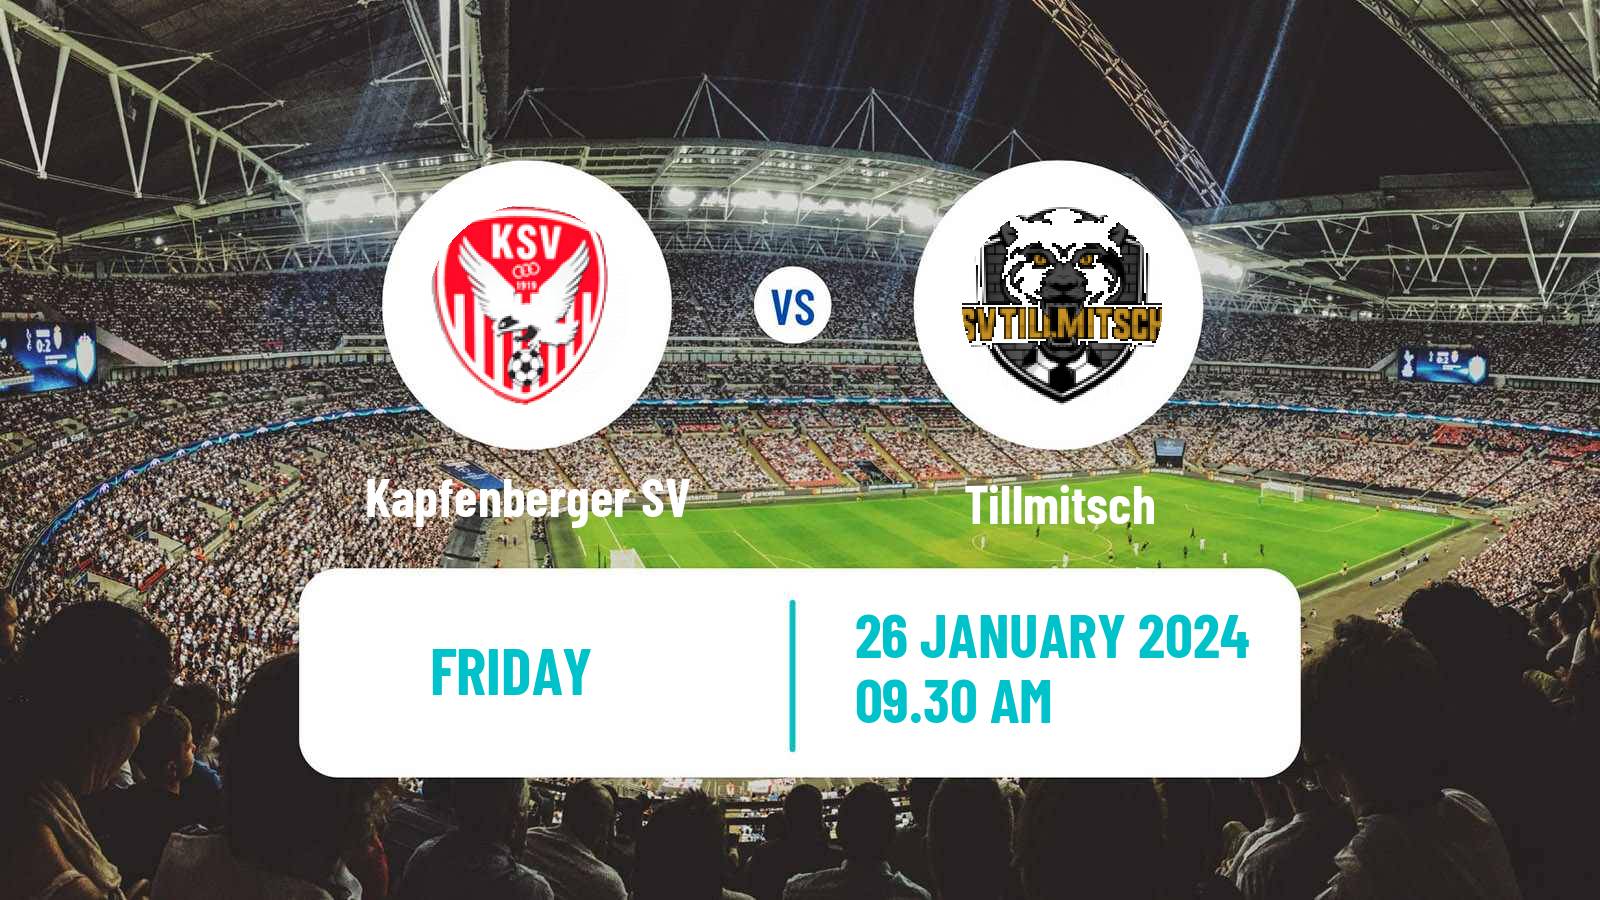 Soccer Club Friendly Kapfenberger SV - Tillmitsch